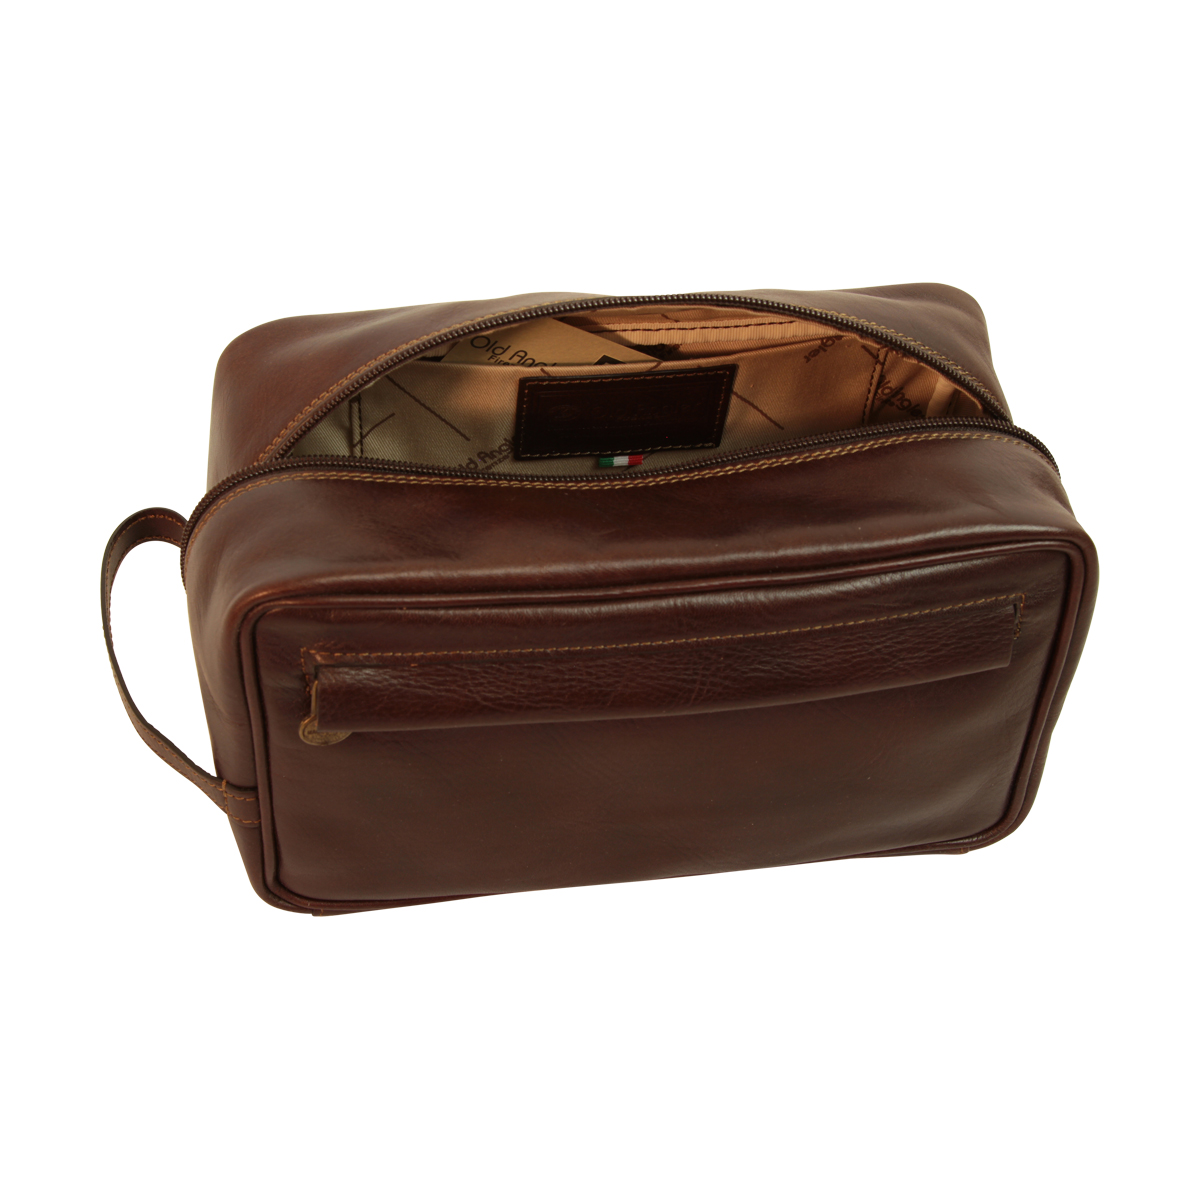 Full-grain calfskin leather beauty case - Dark brown- 078989TM | 078989TM | EURO | Old Angler Firenze